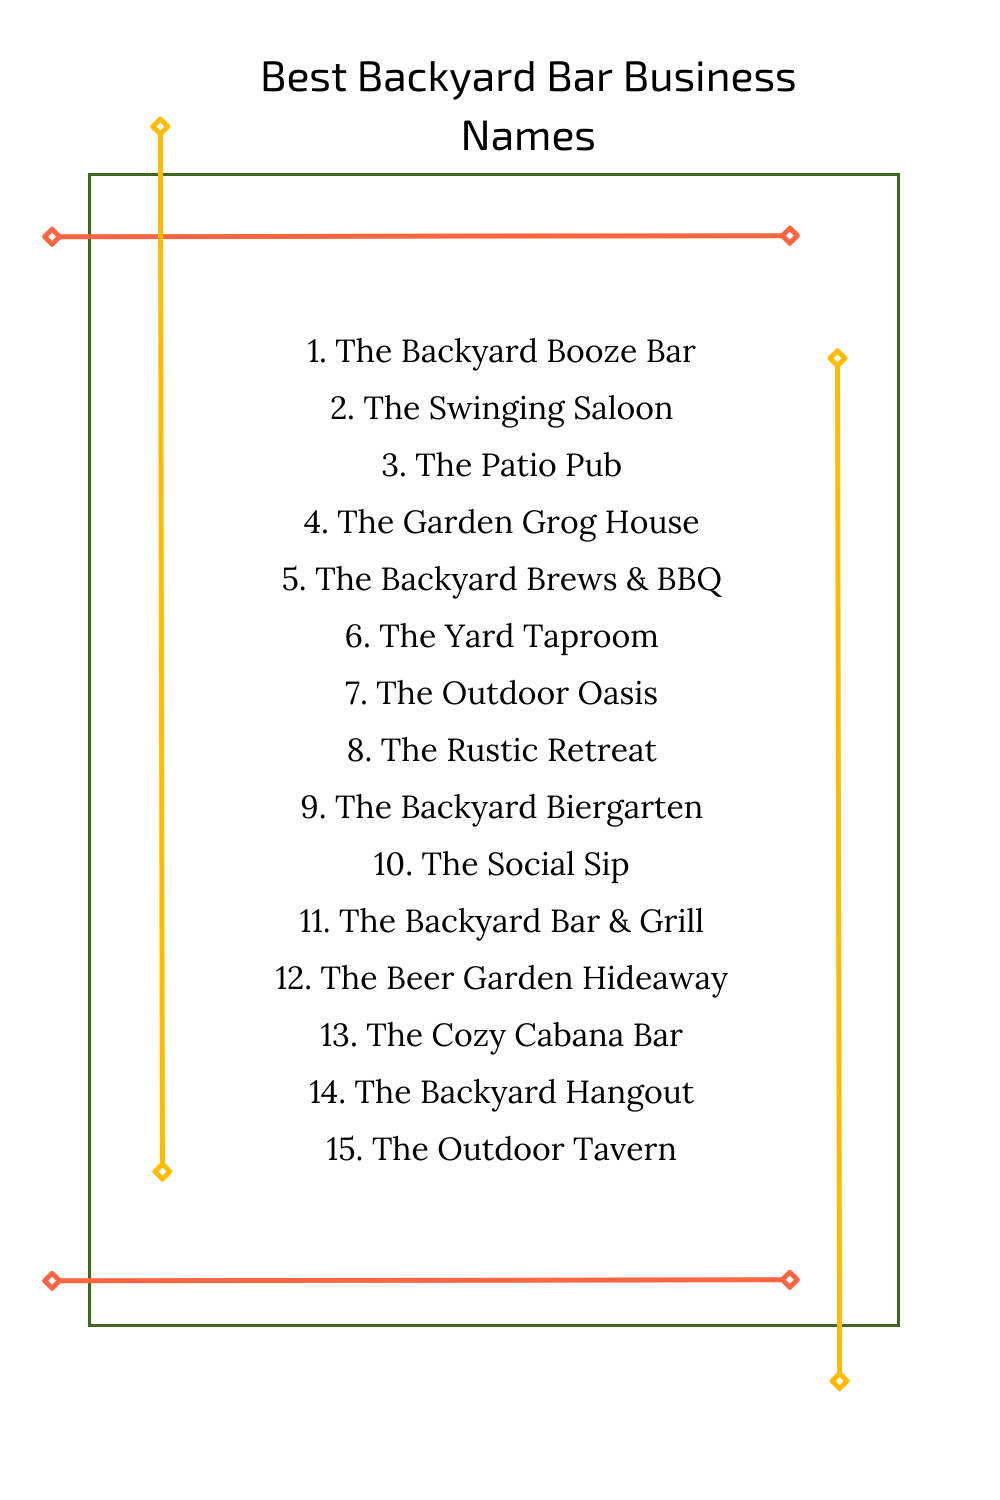 Best Backyard Bar Business Names